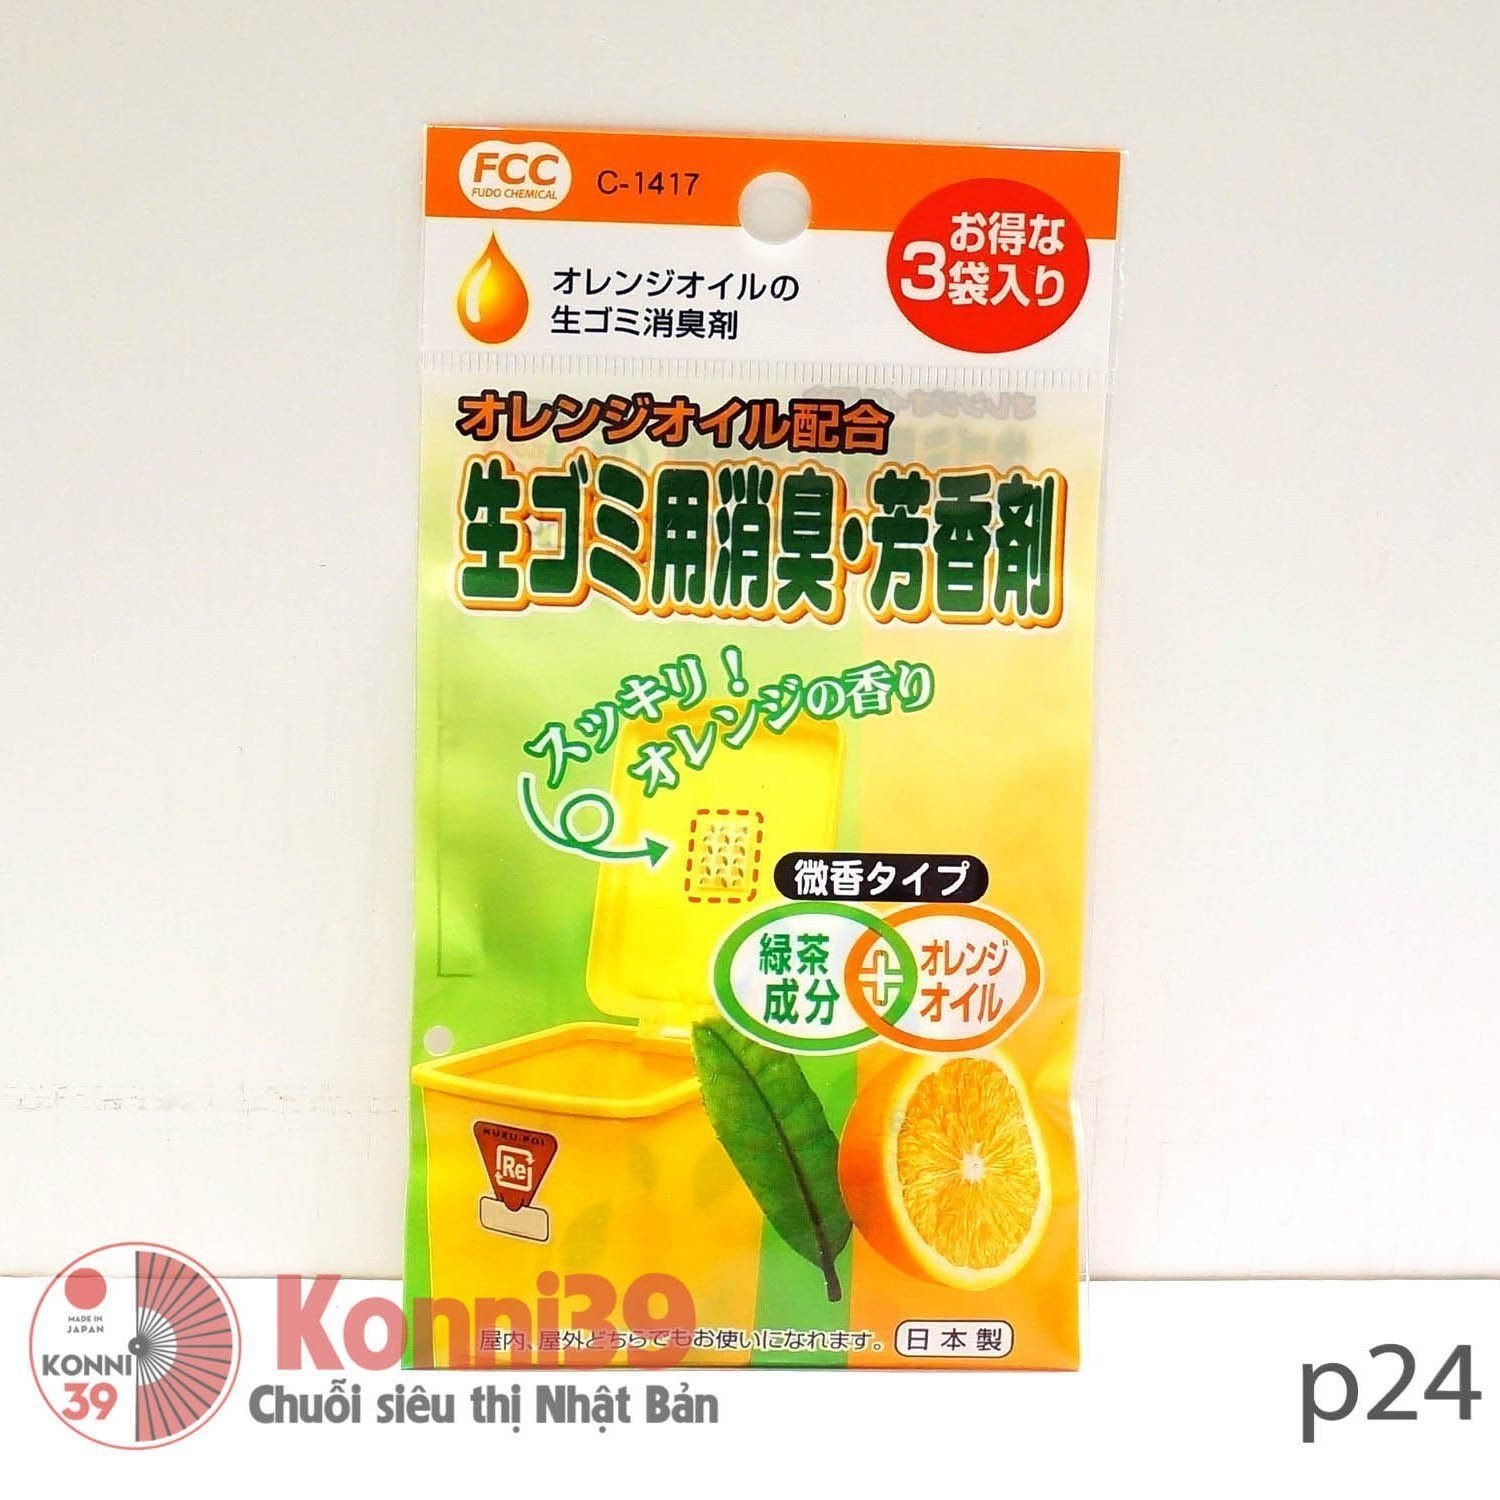 Vỉ dán khử mùi thùng rác SANADA (vàng)-Chuỗi siêu thị Nhật Bản - MADE IN JAPAN Konni39 tại Việt Nam